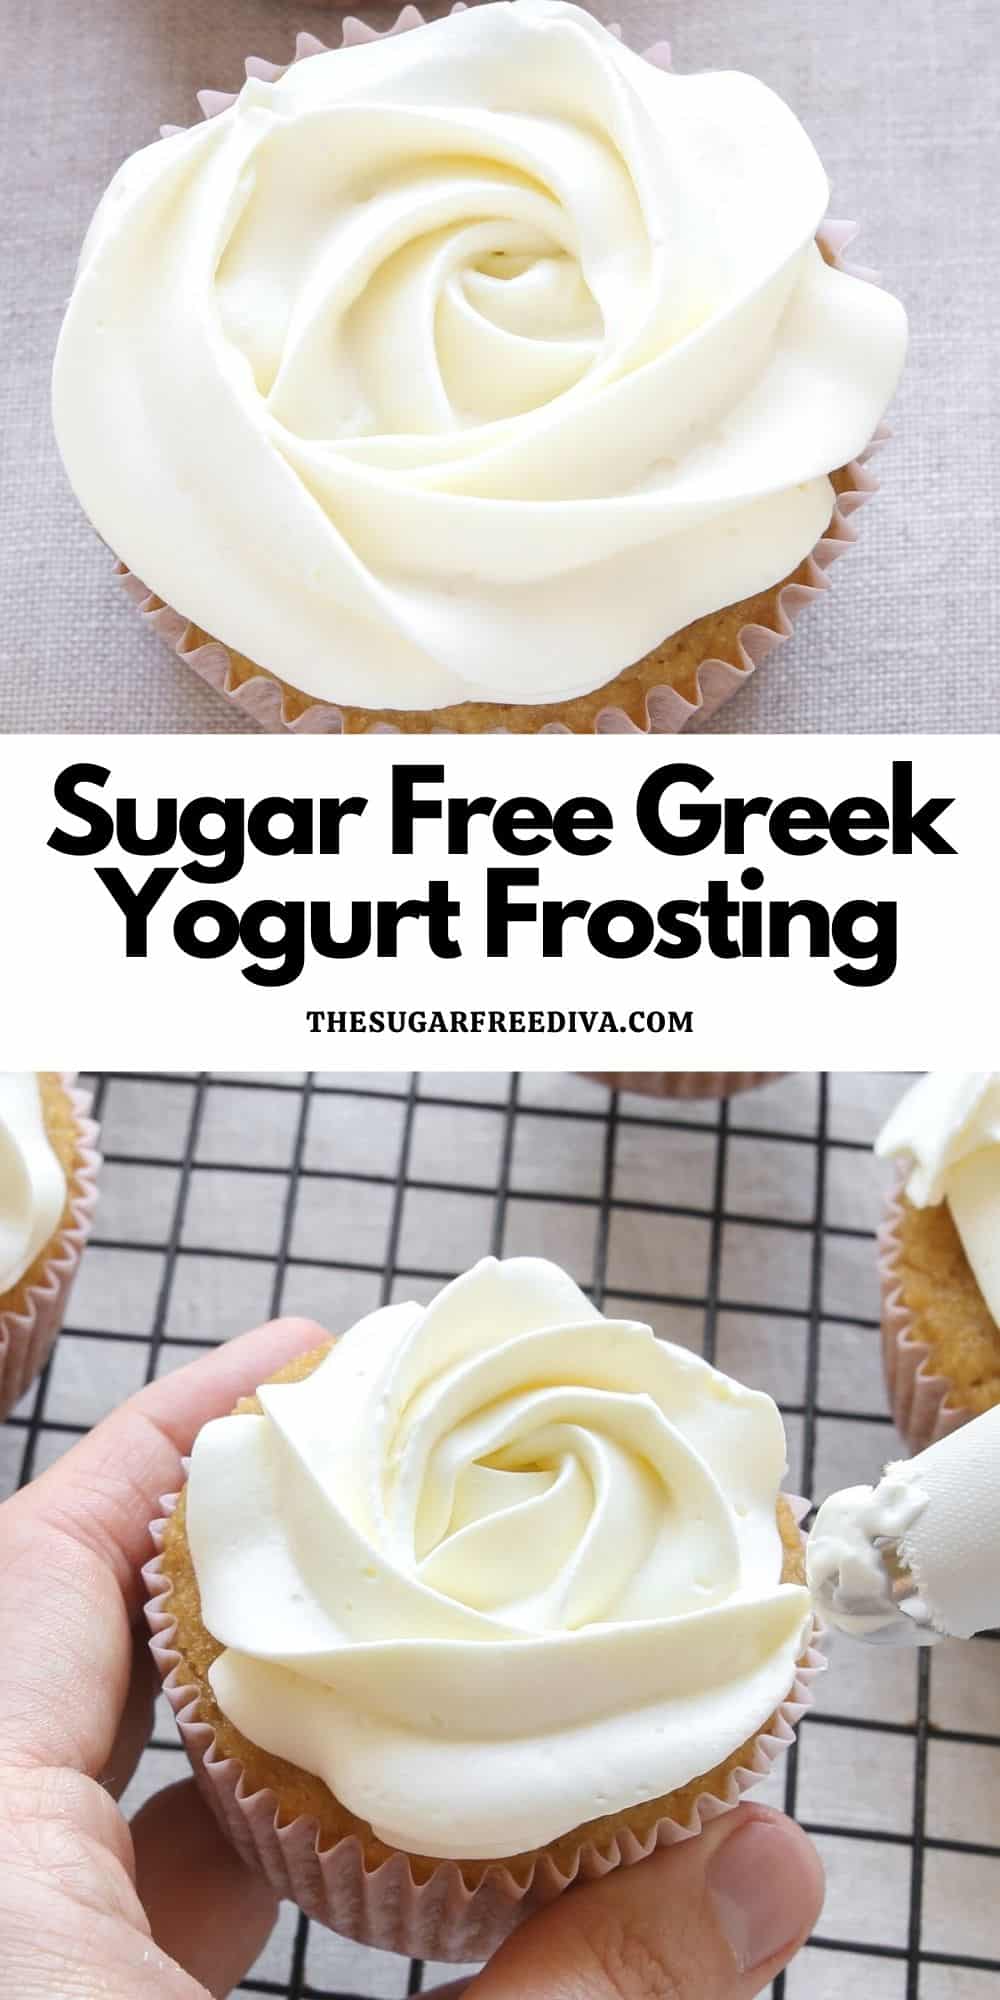 Sugar Free Greek Yogurt Frosting